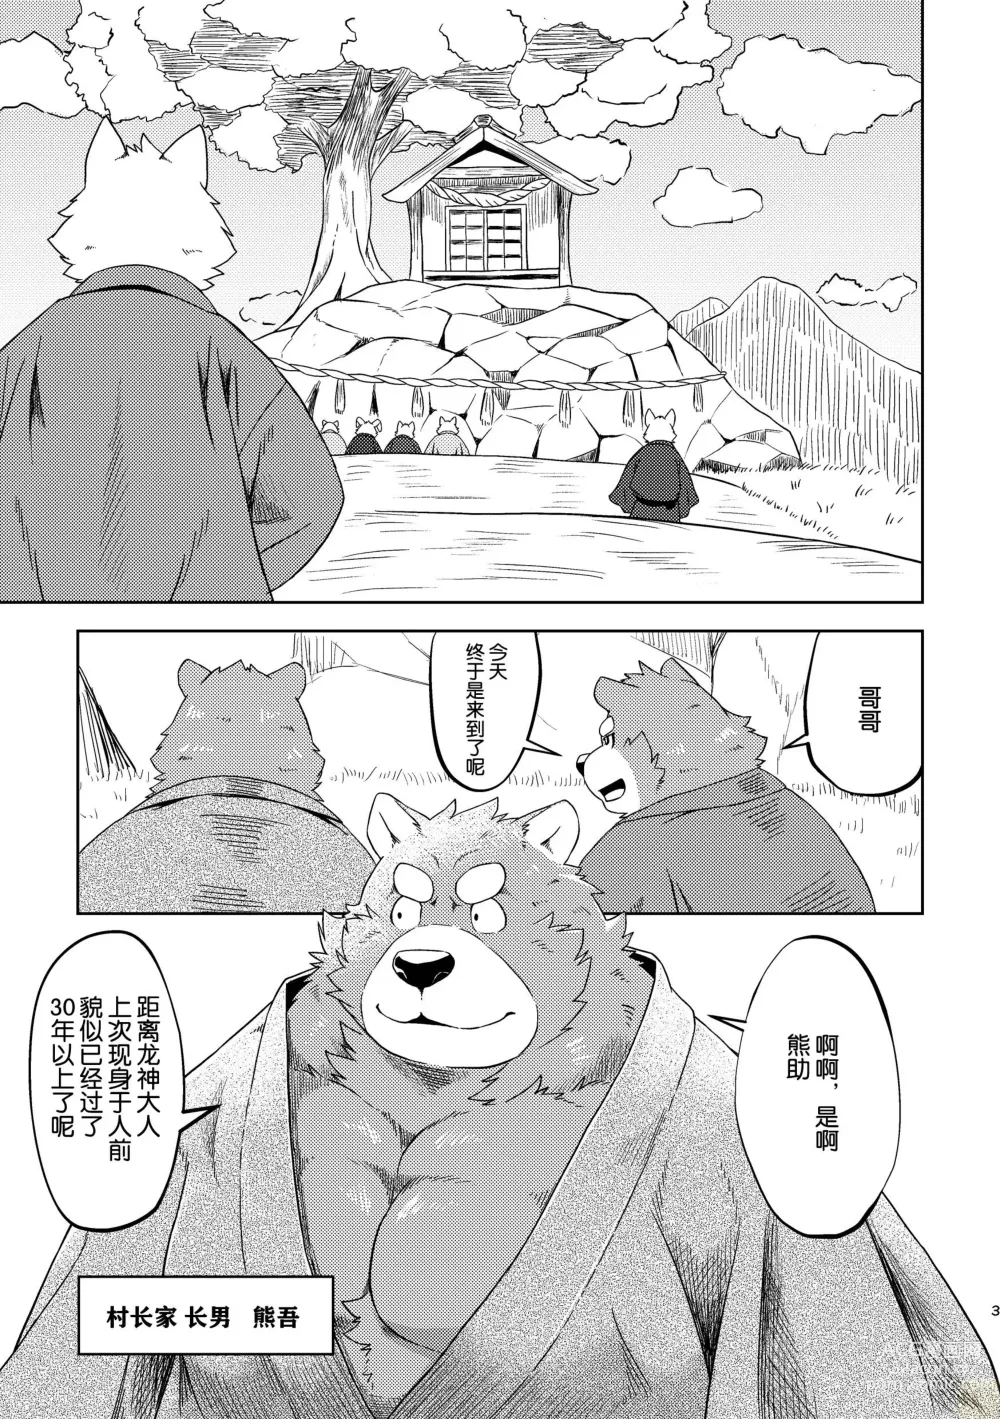 Page 3 of doujinshi SACRIFICE